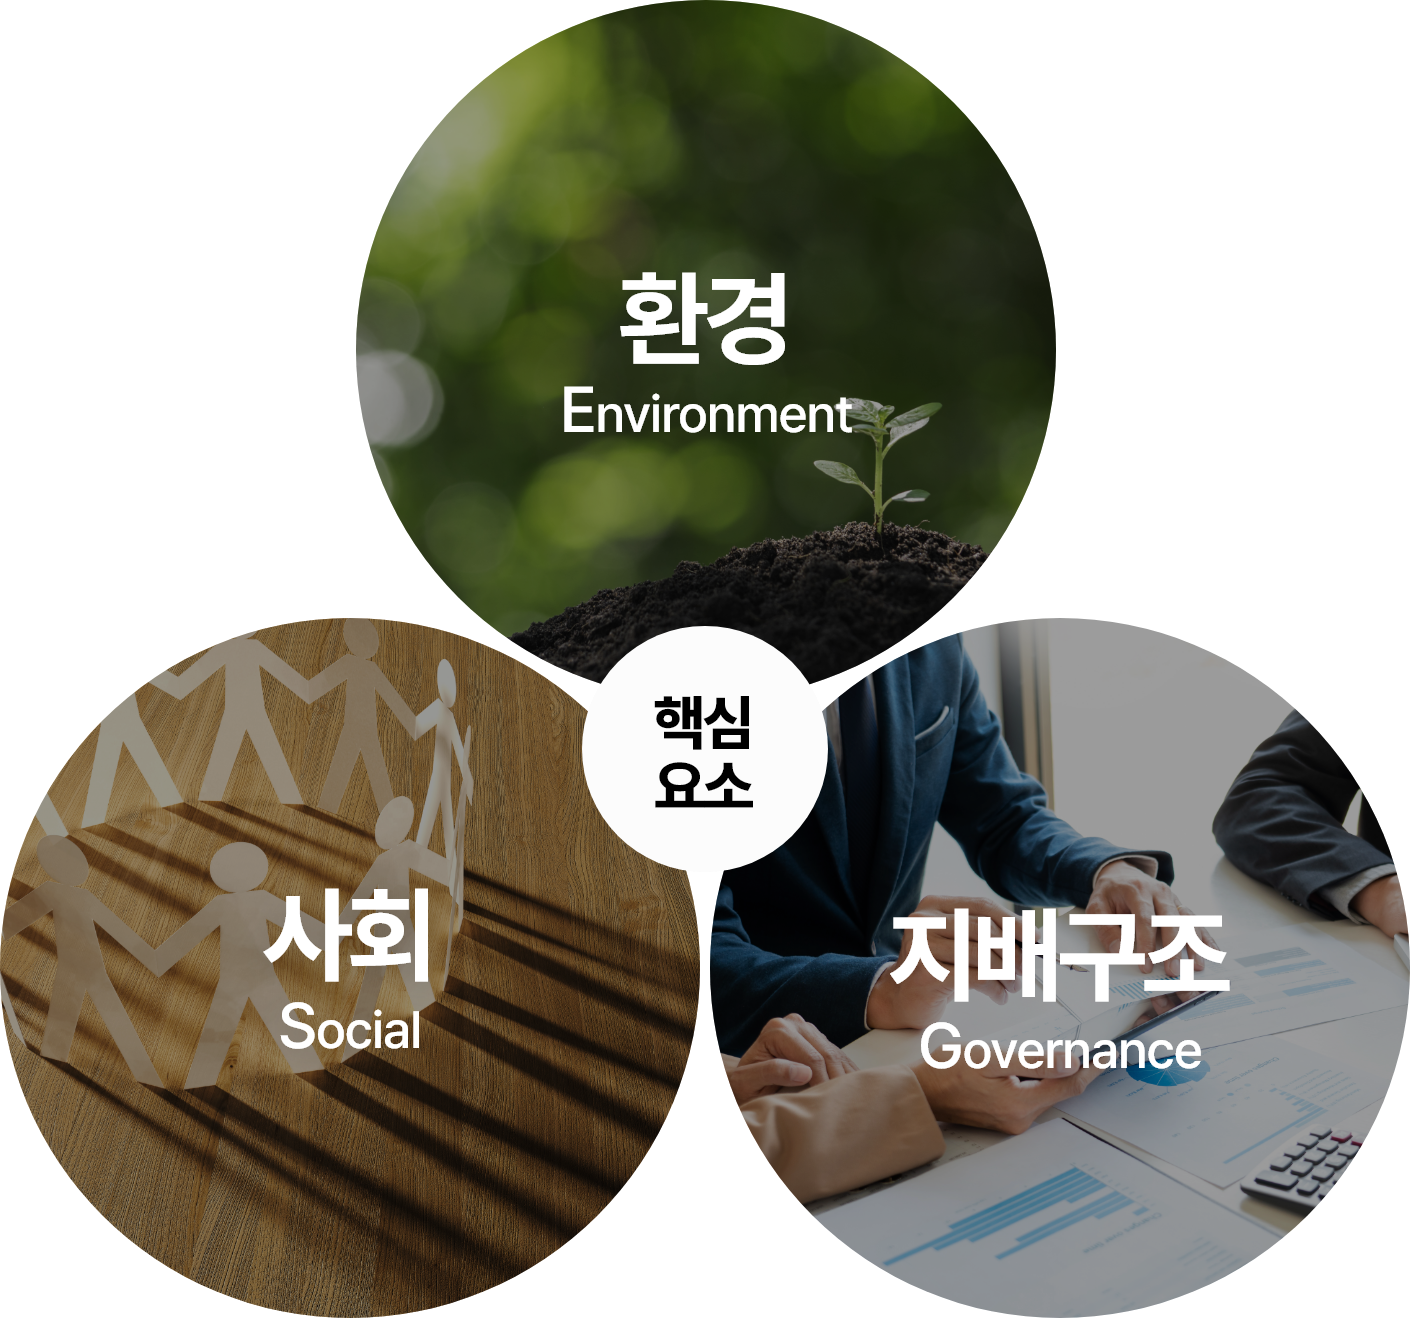 핵심요소: 환경(Environment), 사회(Social), 지배구조(Governance)